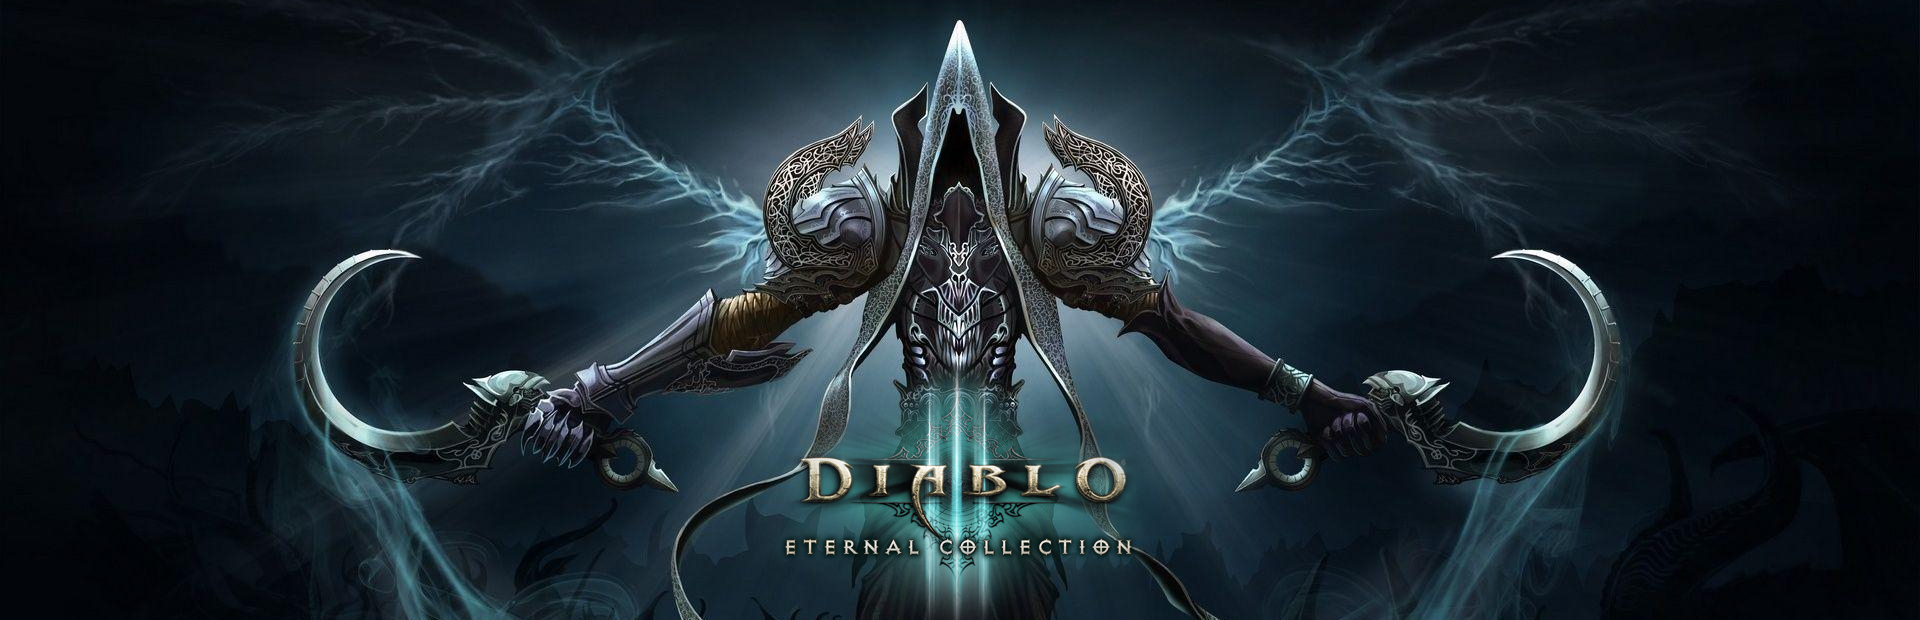 دانلود بازی Diablo III Eternal Collection برای PC | گیمباتو